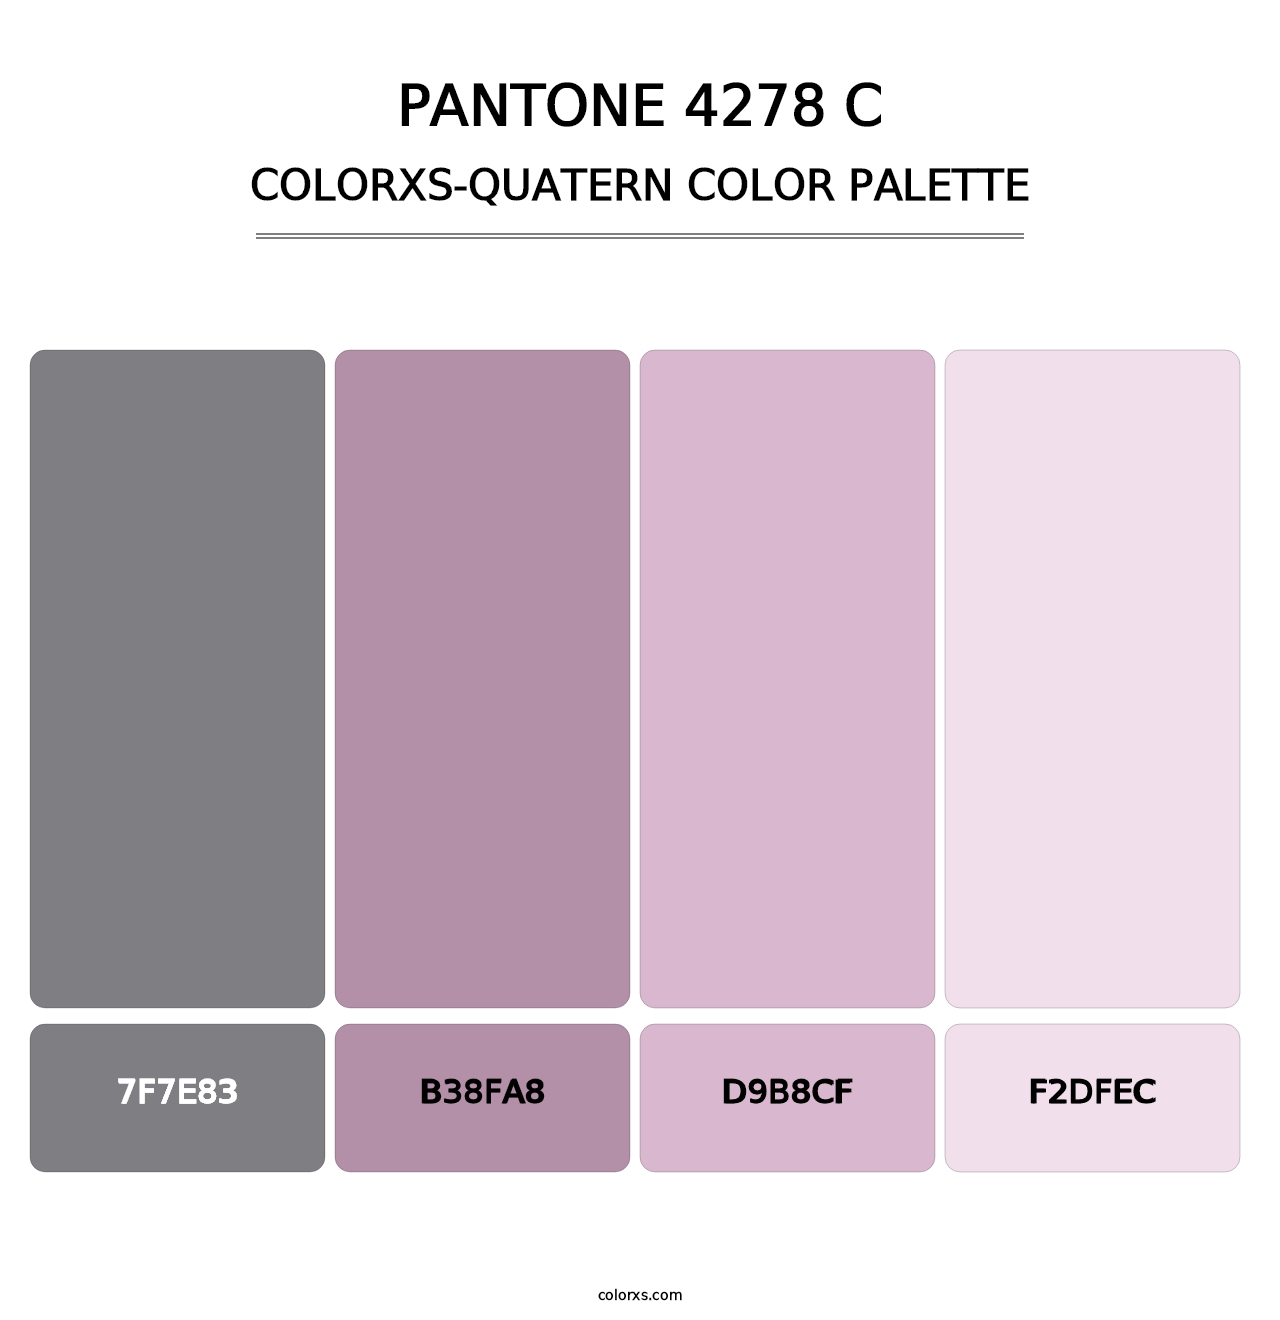 PANTONE 4278 C - Colorxs Quatern Palette